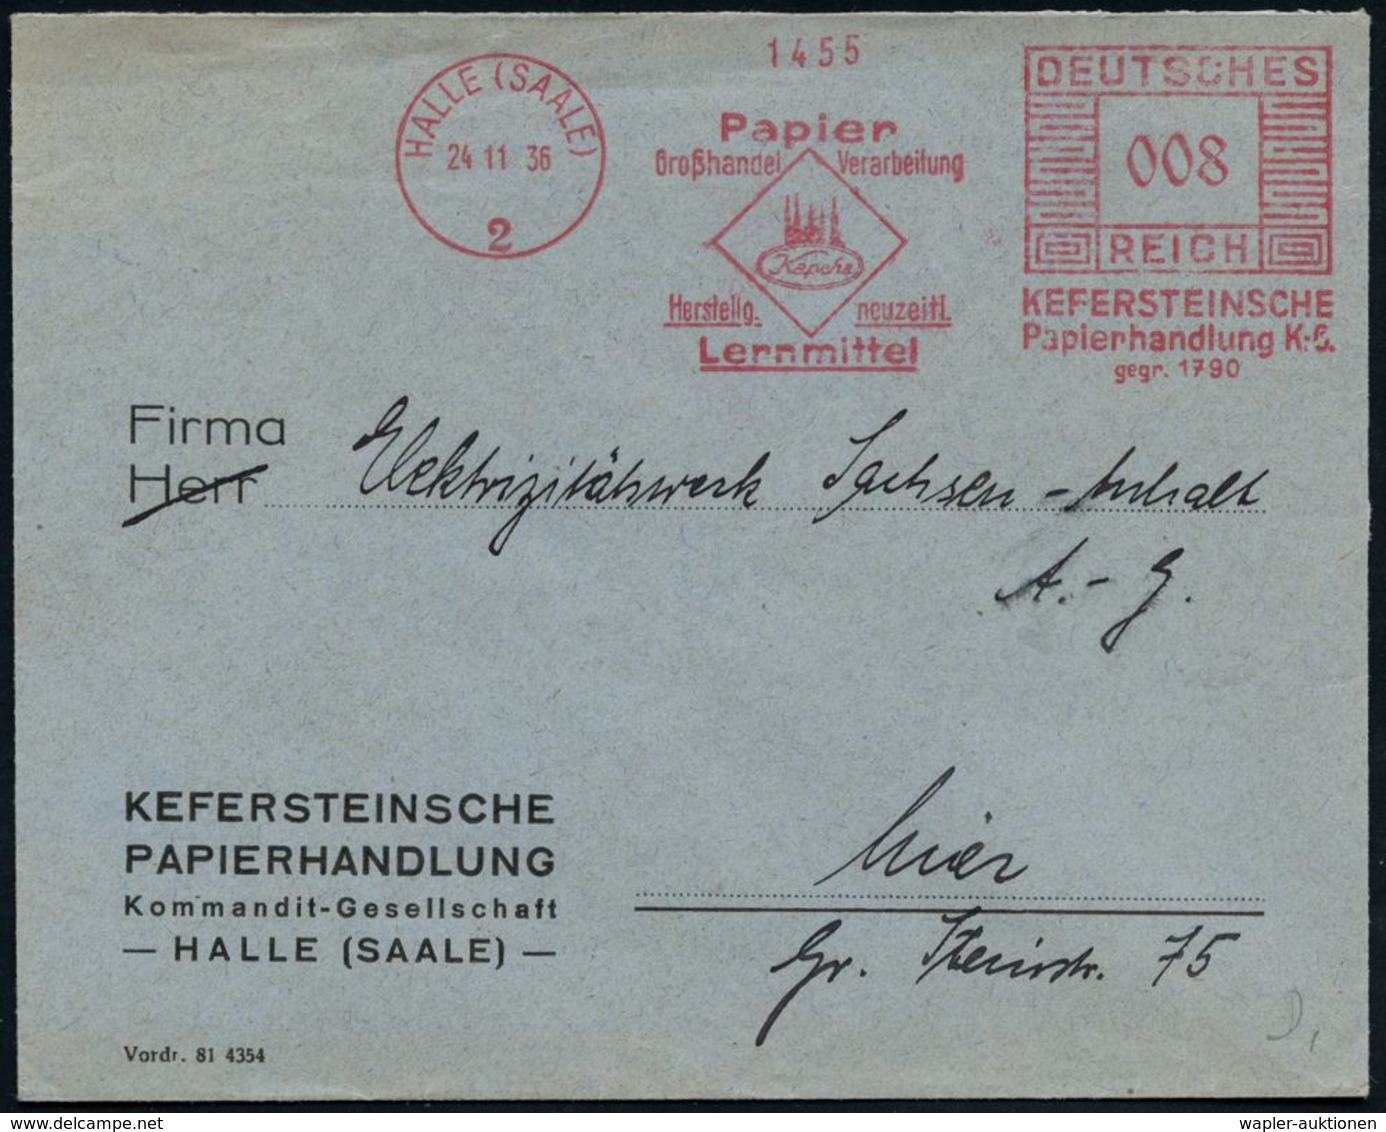 HALLE (SAALE)/ 2/ Papier/ ..Verarbeitung/ ..neuzeitl./ Lernmittel/ KEFERSTEINSCHE/ Papierhandlung KG/ Gegr.1790 1936 (24 - Sin Clasificación